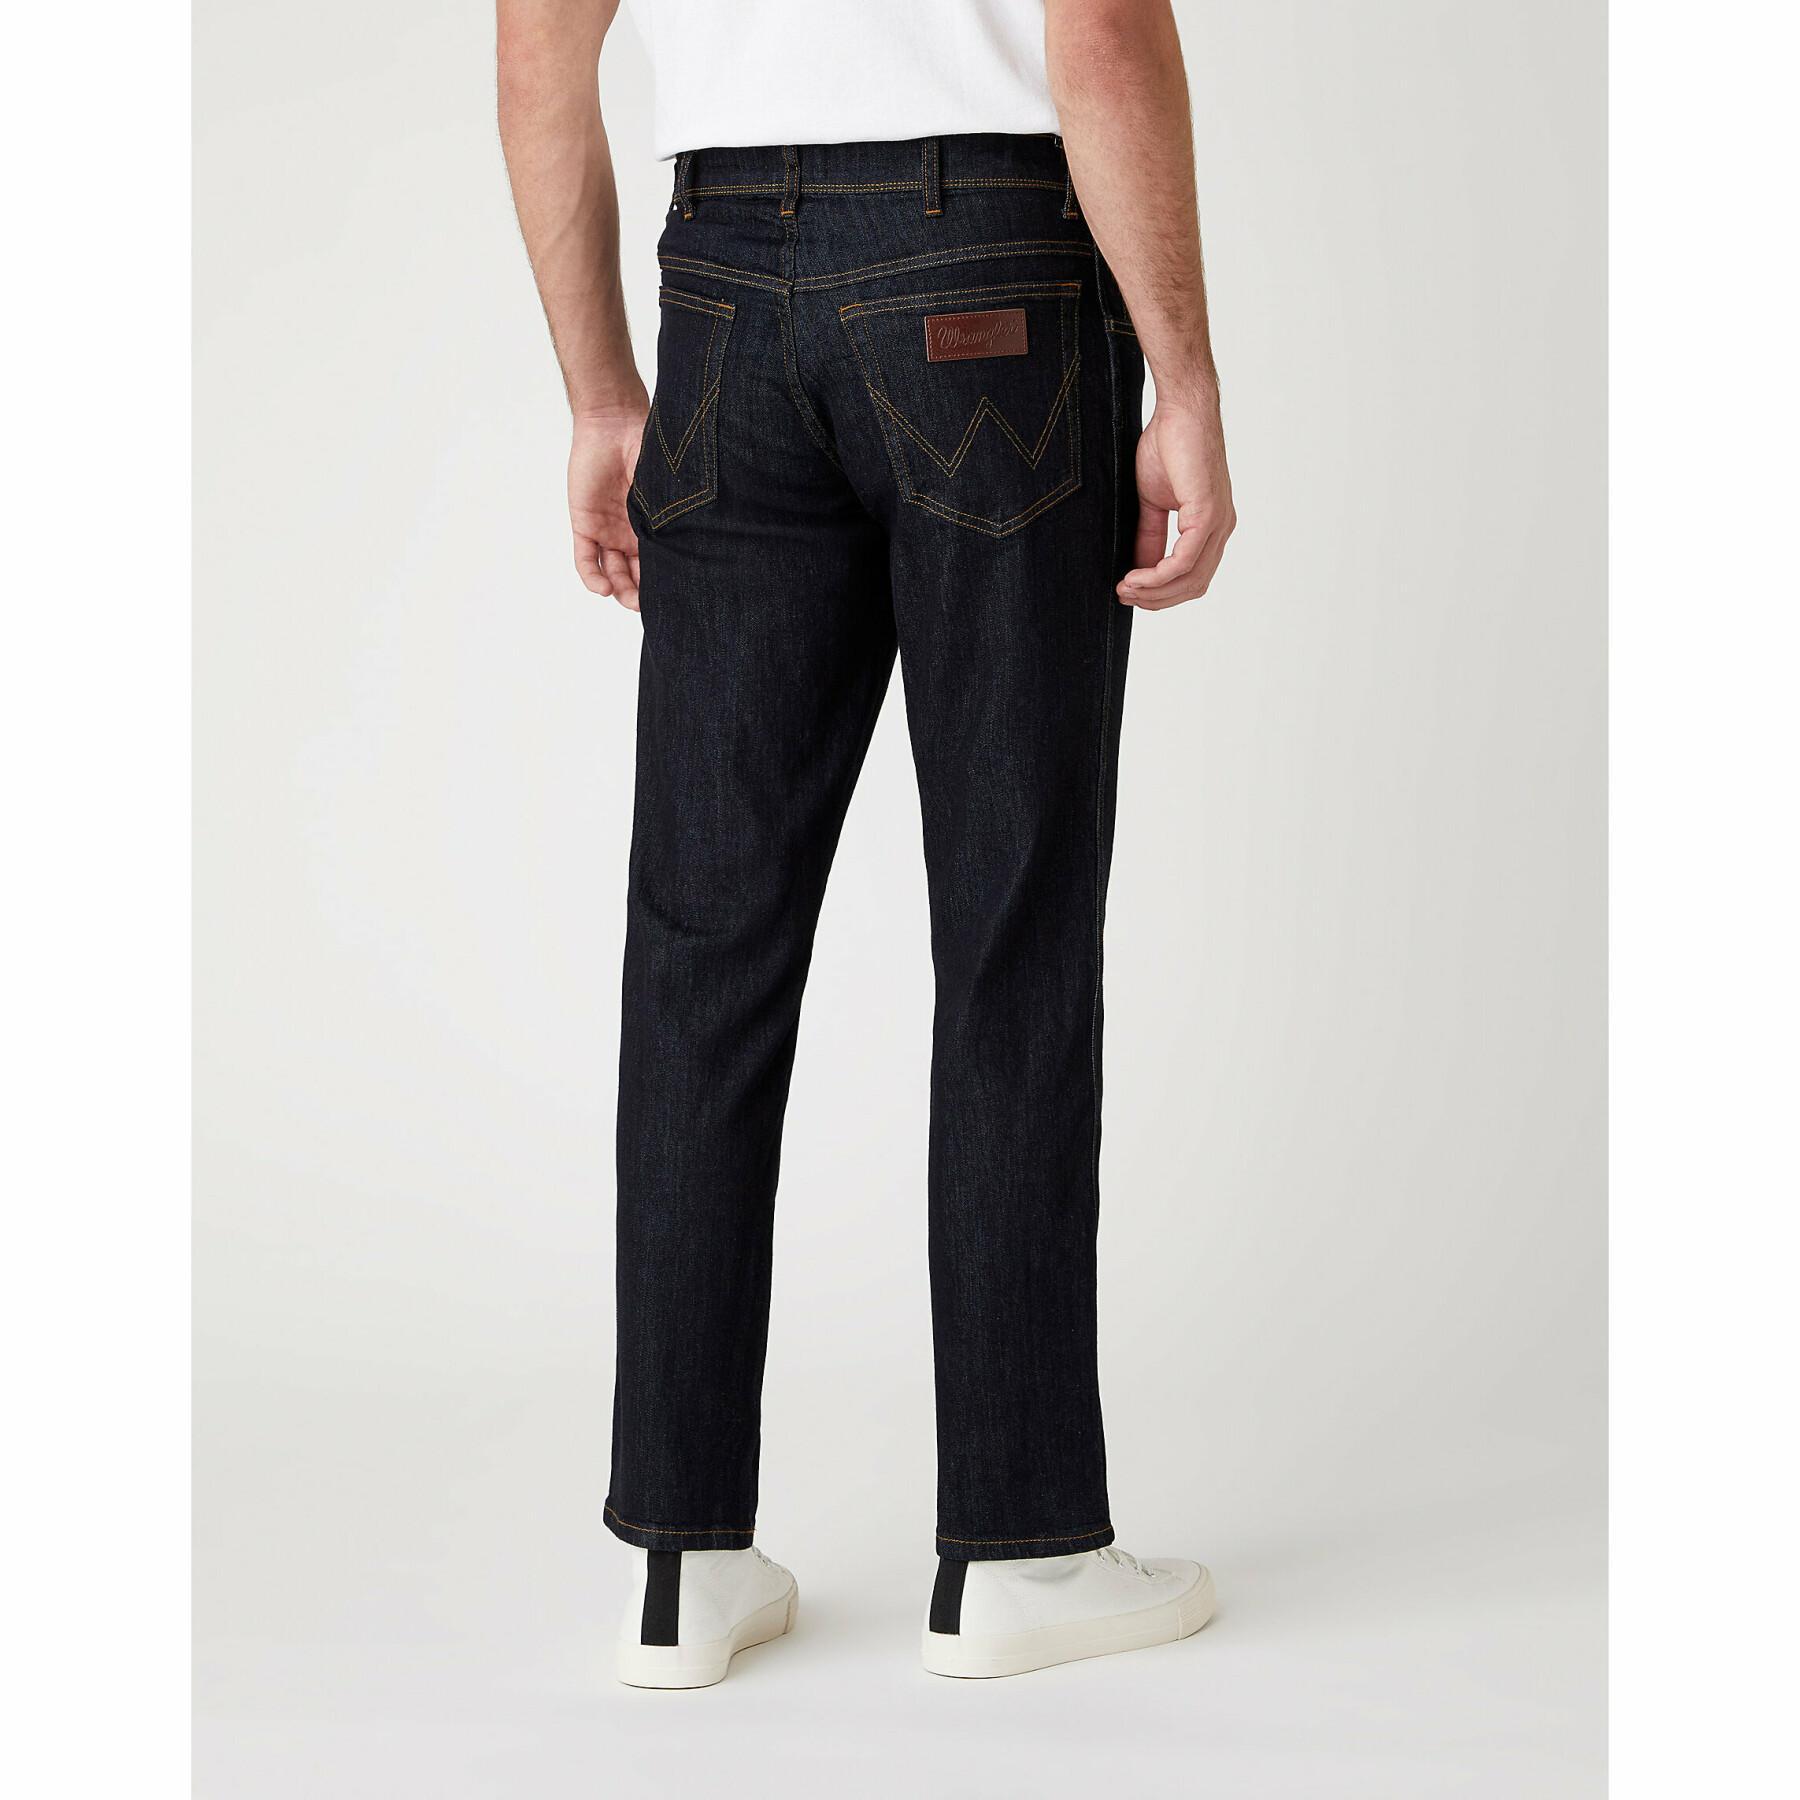 Slim jeans Wrangler Texas Medium in Dark Rinse